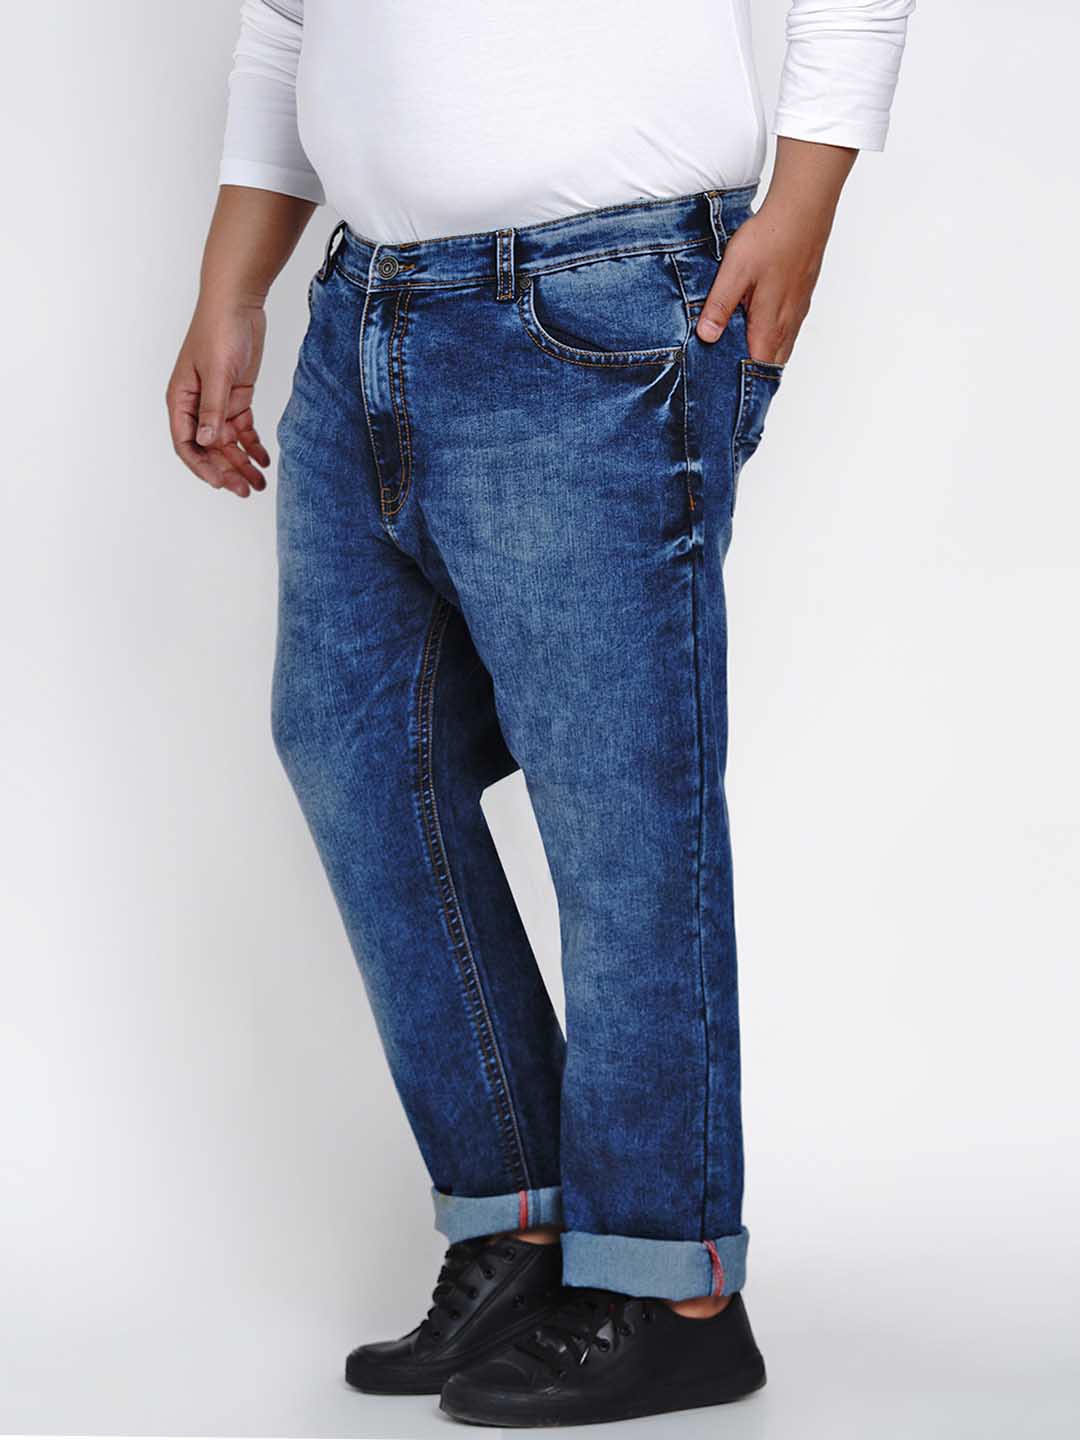 affordables/jeans/JPJ2521/jpj2521-4.jpg